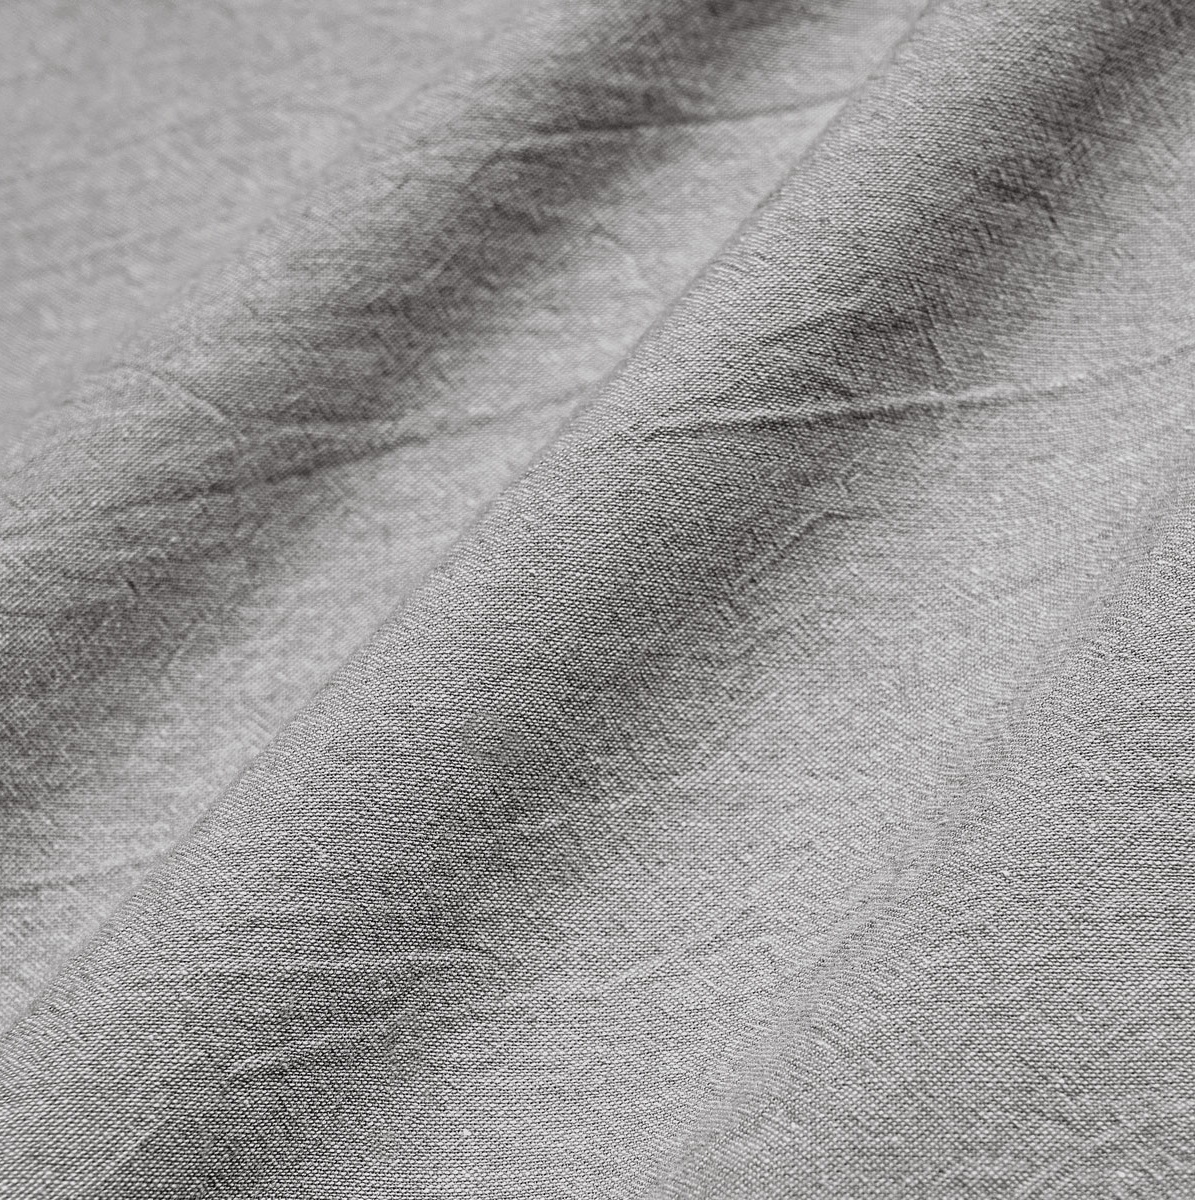 Комплект постельного белья Prime Prive Смоген Двуспальный кинг сайз тёмно-серый, размер Кинг сайз - фото 12